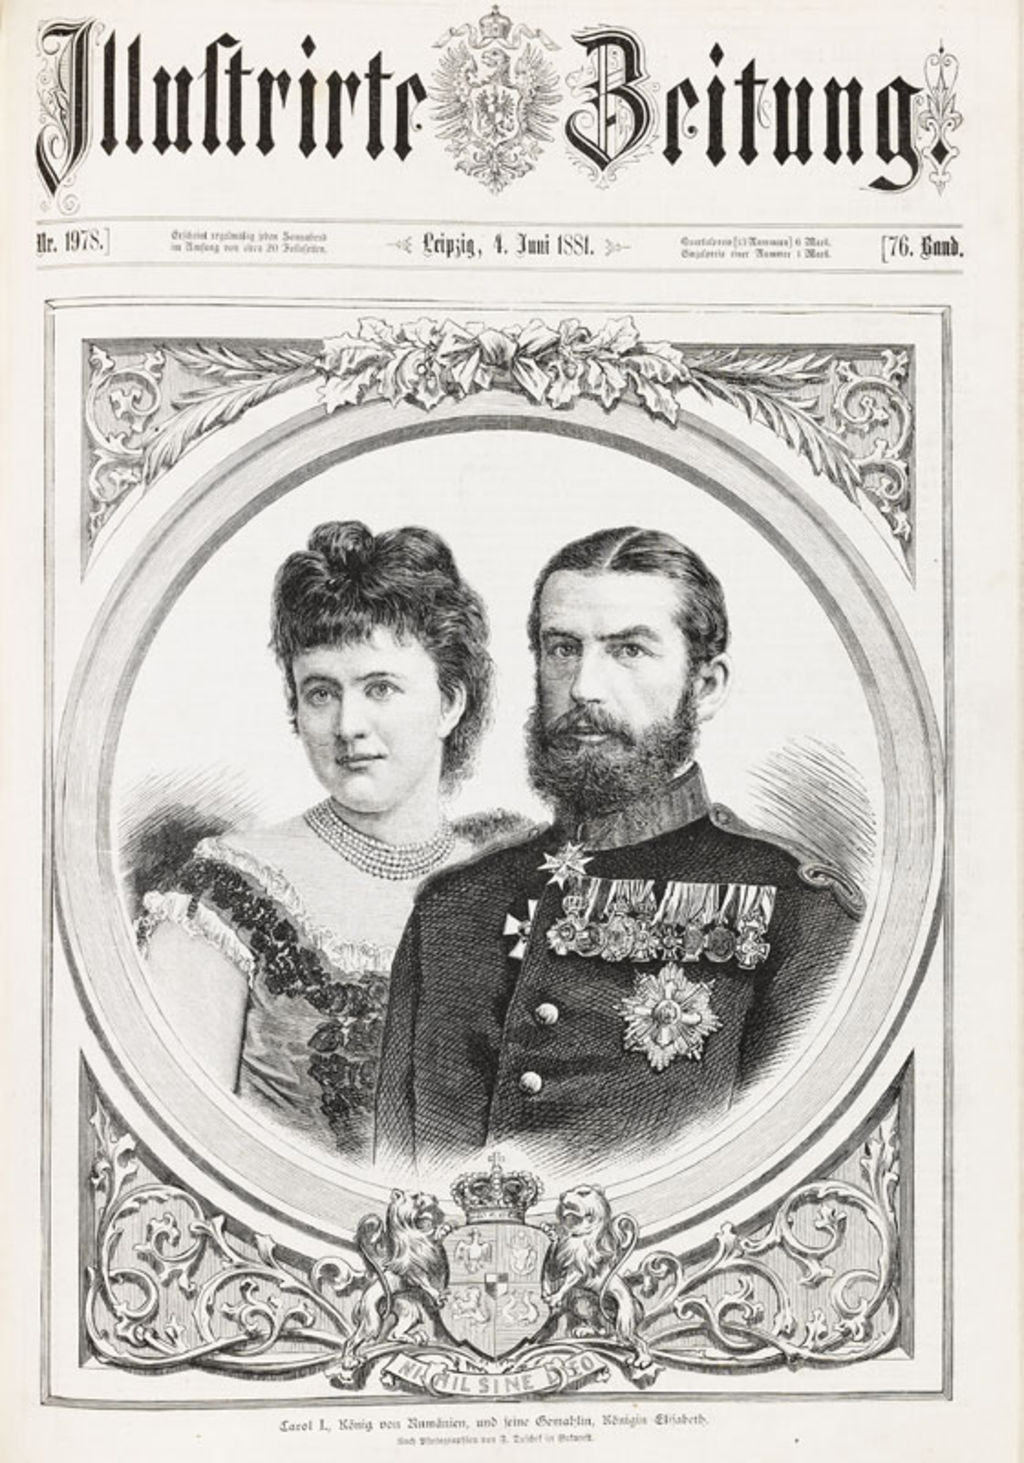 Grafik: Illustrirte Zeitung zur Krönung Carols I. von Rumänien, 1881